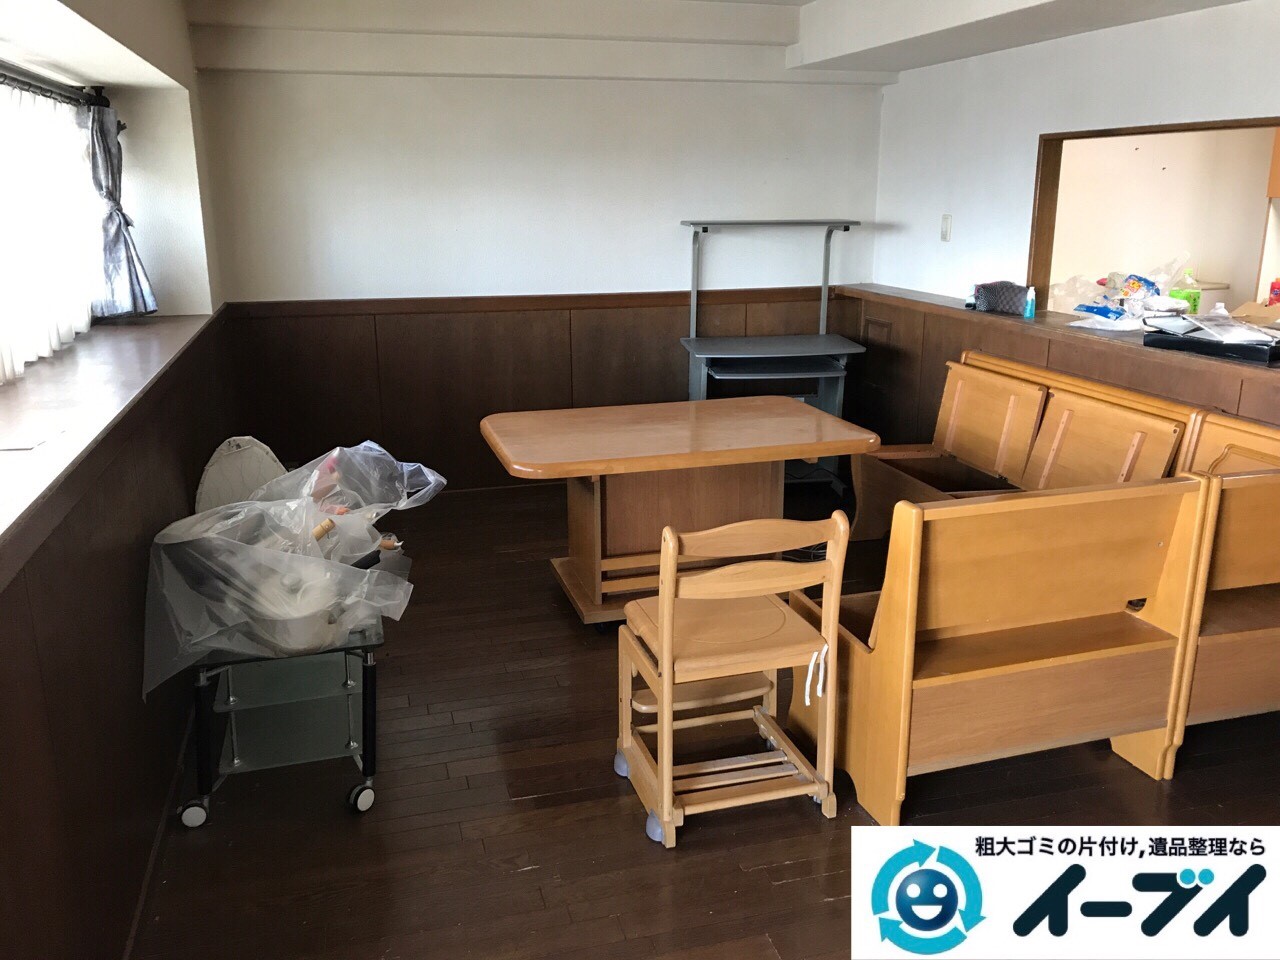 2017年7月20日大阪府大阪市北区でダイニングテーブルのセットや粗大ゴミを不用品回収しました。写真5